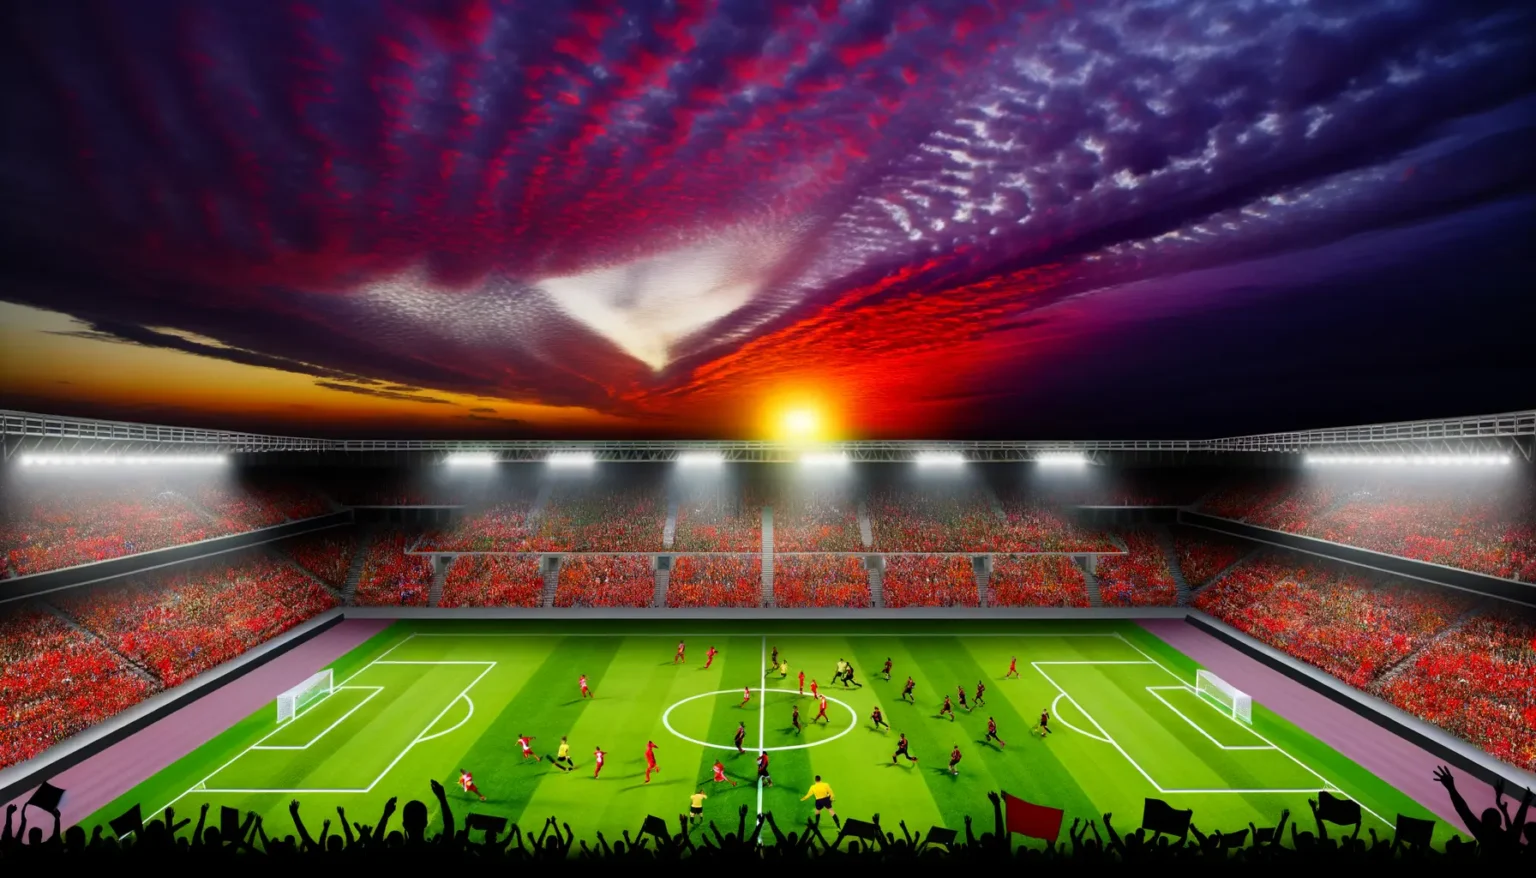 Voller Fußballstadion während eines Spiels bei Sonnenuntergang mit rotem und blauem Himmel. Fans in roten und weißen Farben füllen die Tribünen, während die Spieler auf dem Spielfeld in Aktion sind und Silhouetten von jubelnden Fans im Vordergrund zu sehen sind.